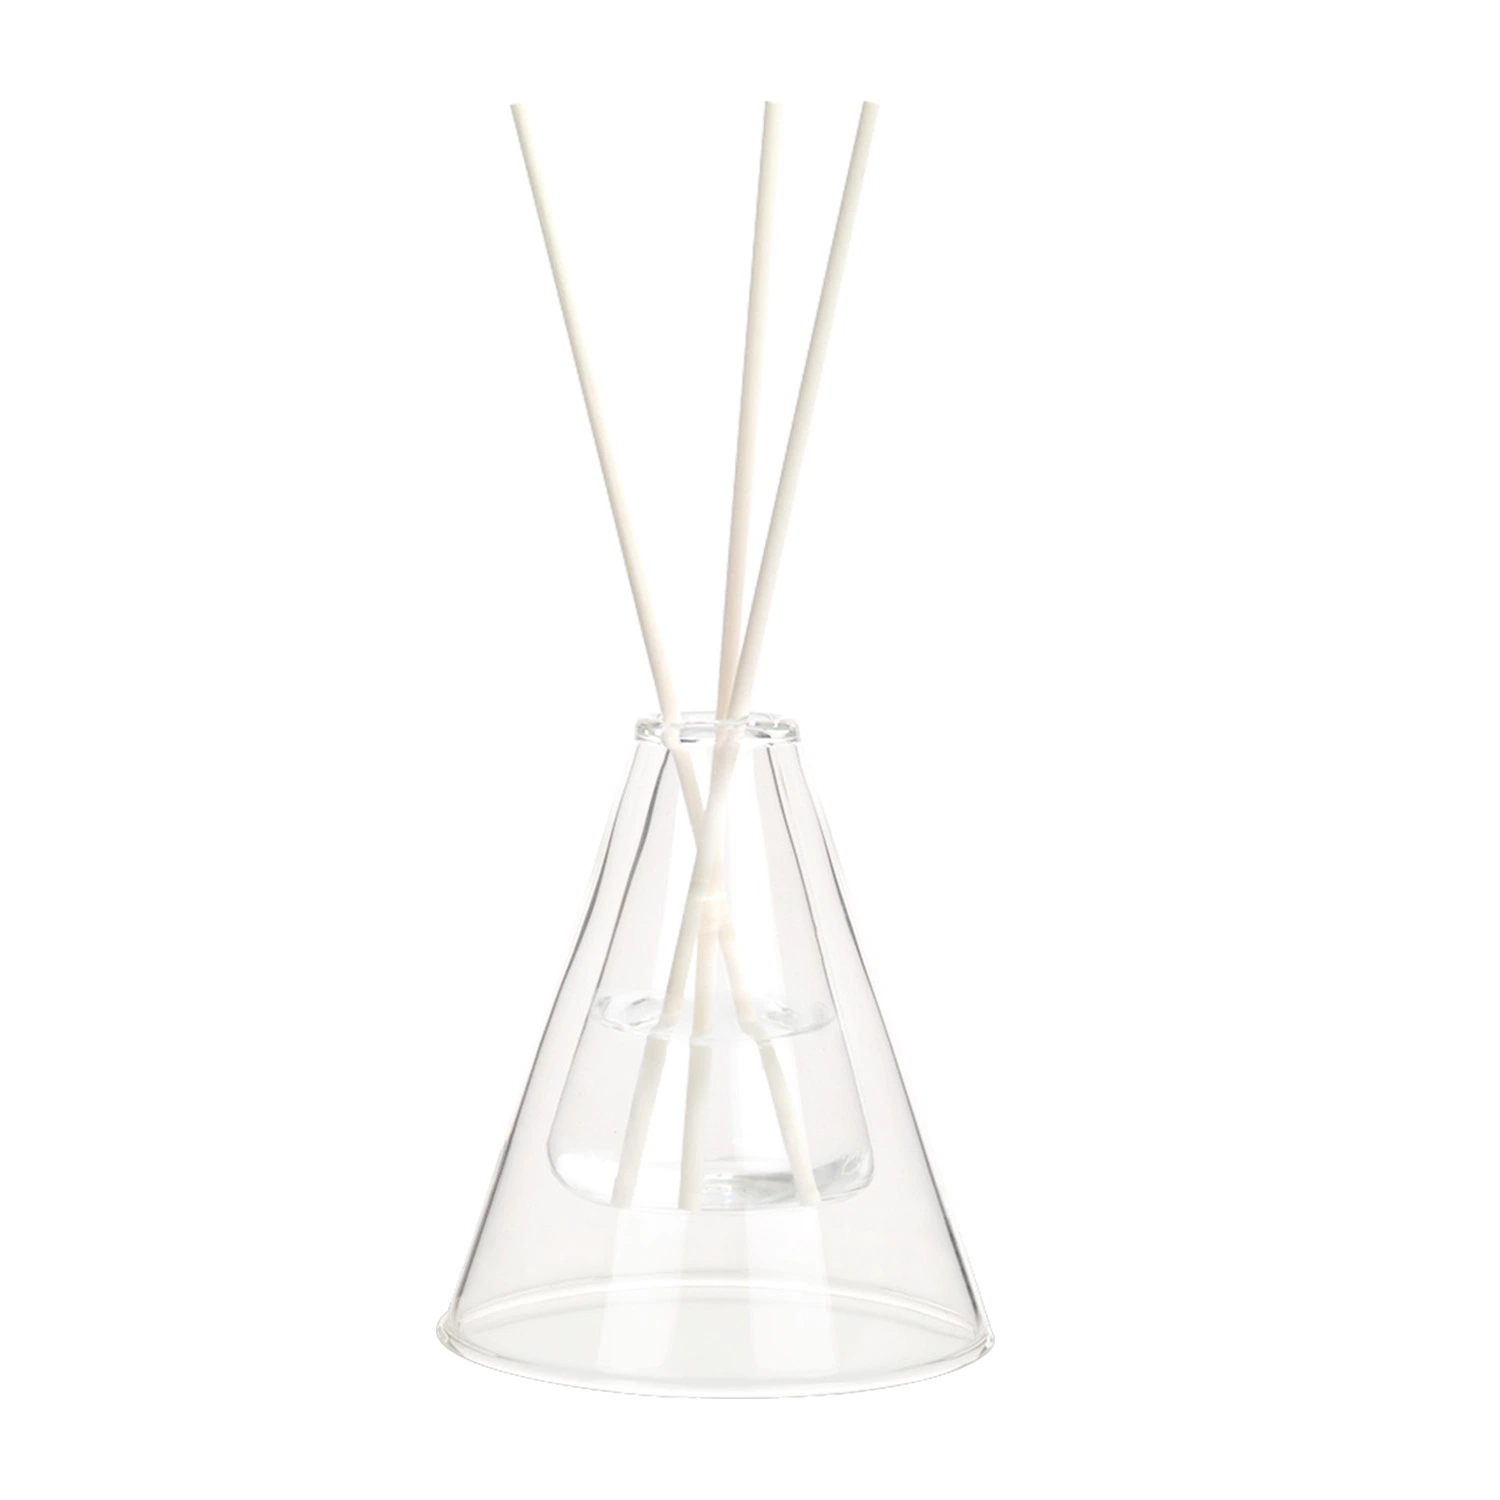 Aroma Decor Fábrica Produziu Difusor de Varetas de Aromaterapia de Vidro Duplo Triângulo Curto Presente.